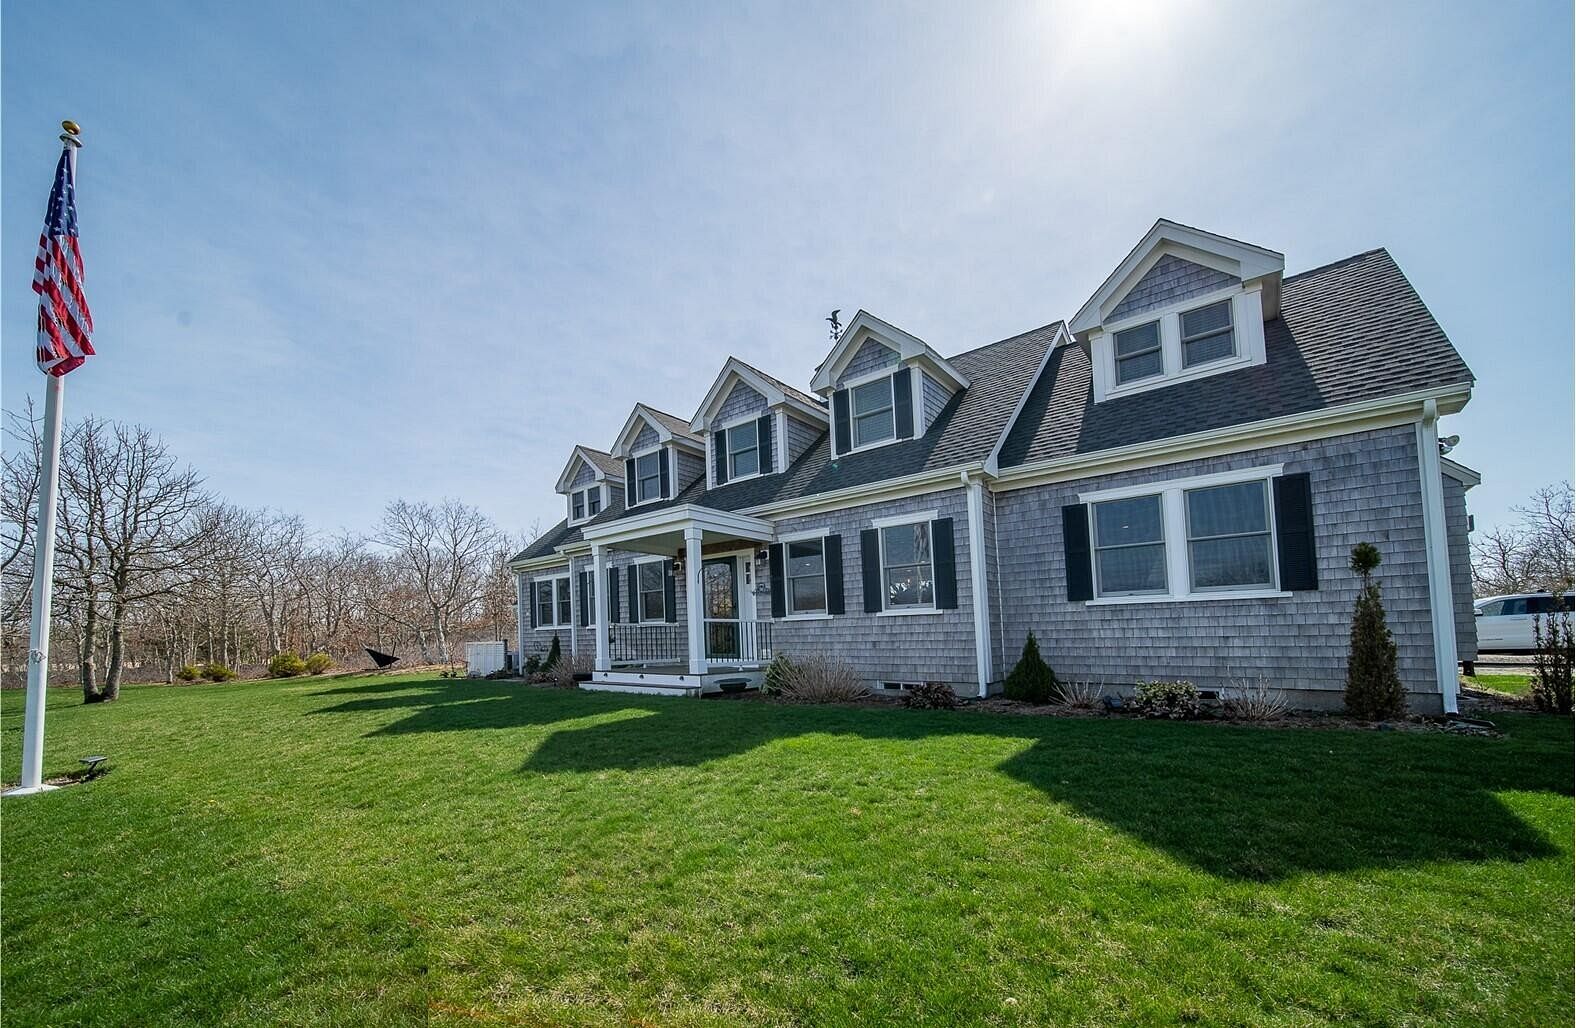 3 Acres of Residential Land & Home Edgartown, Massachusetts, MA